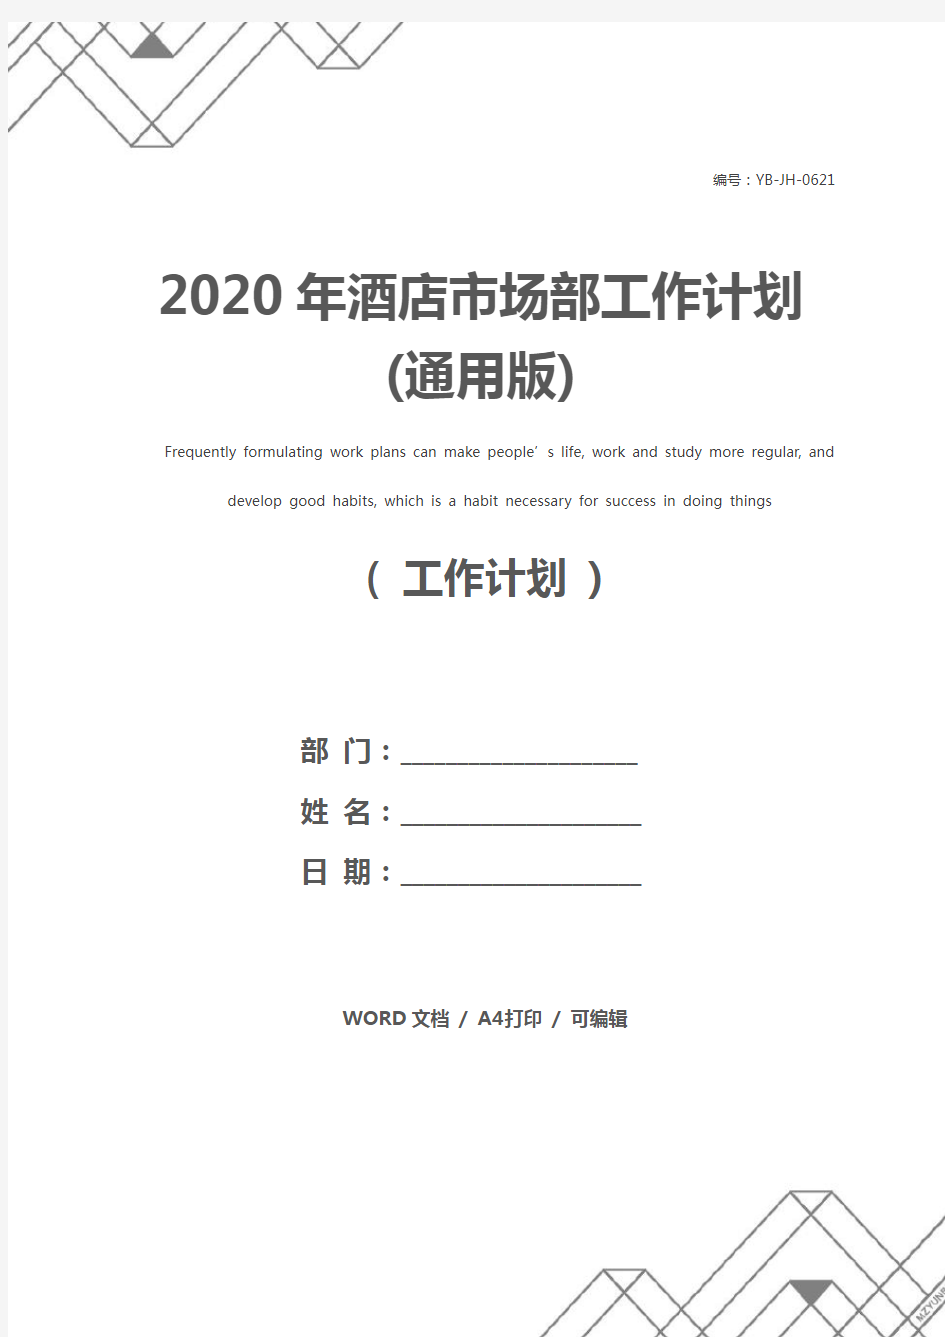 2020年酒店市场部工作计划(通用版)